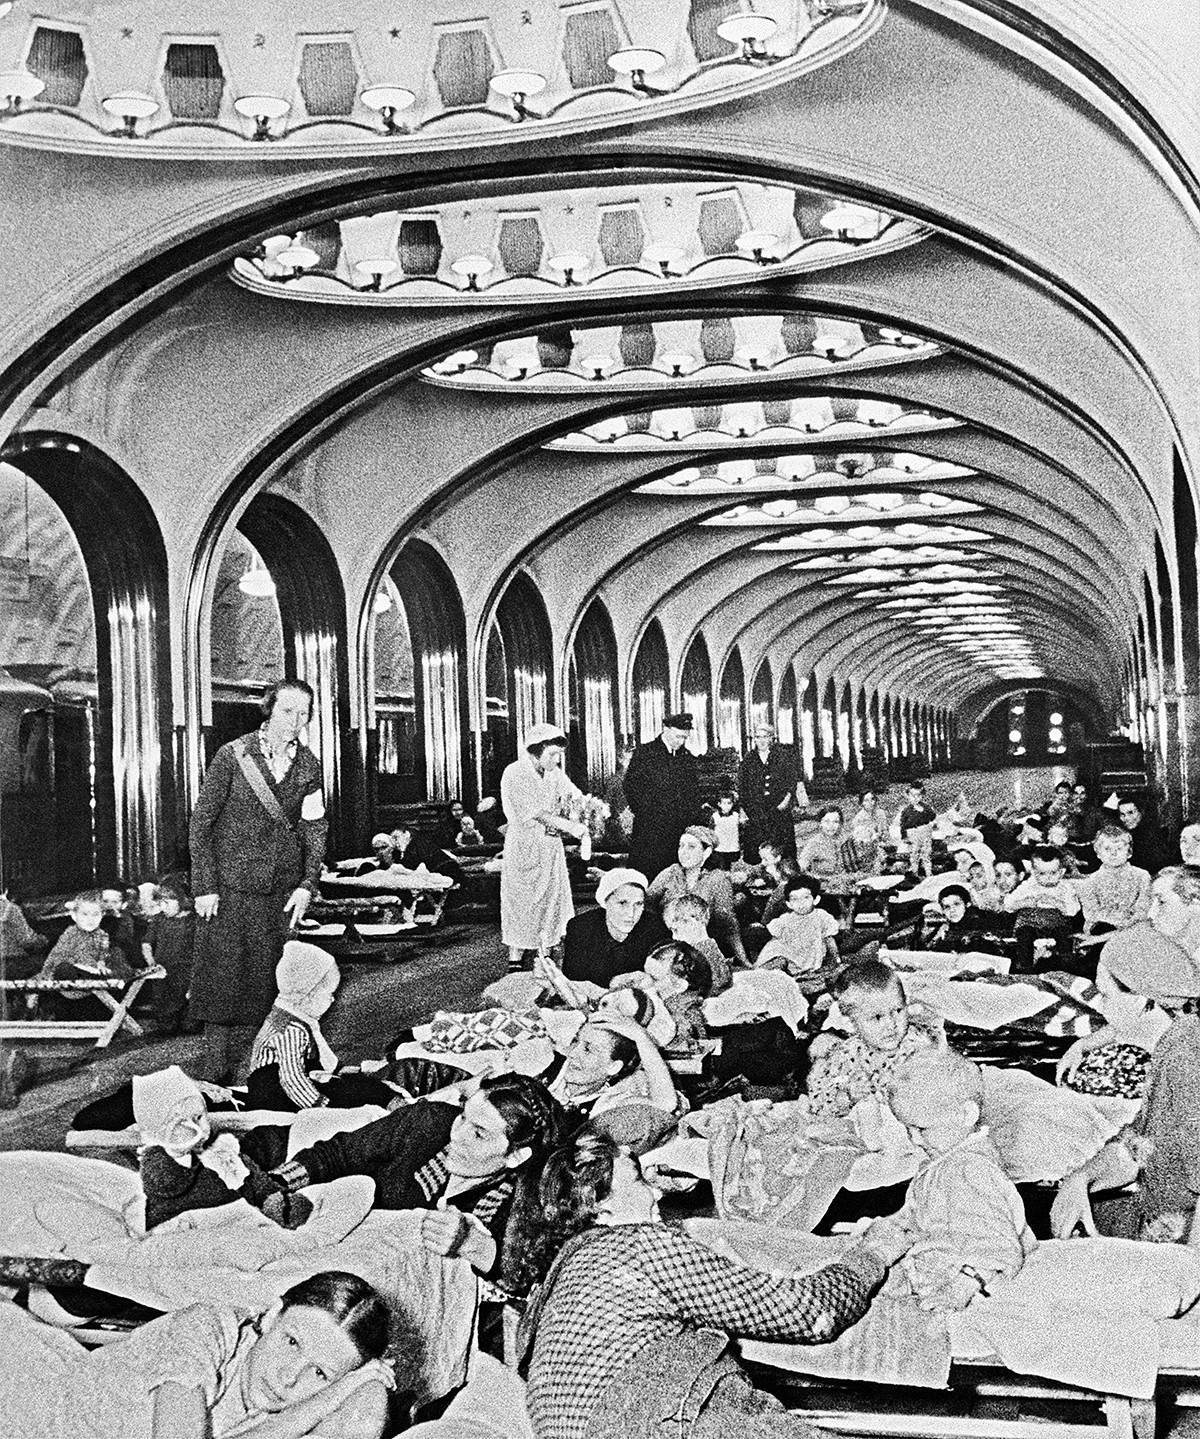 Estação de metrô Mayakovskaya, 1941
